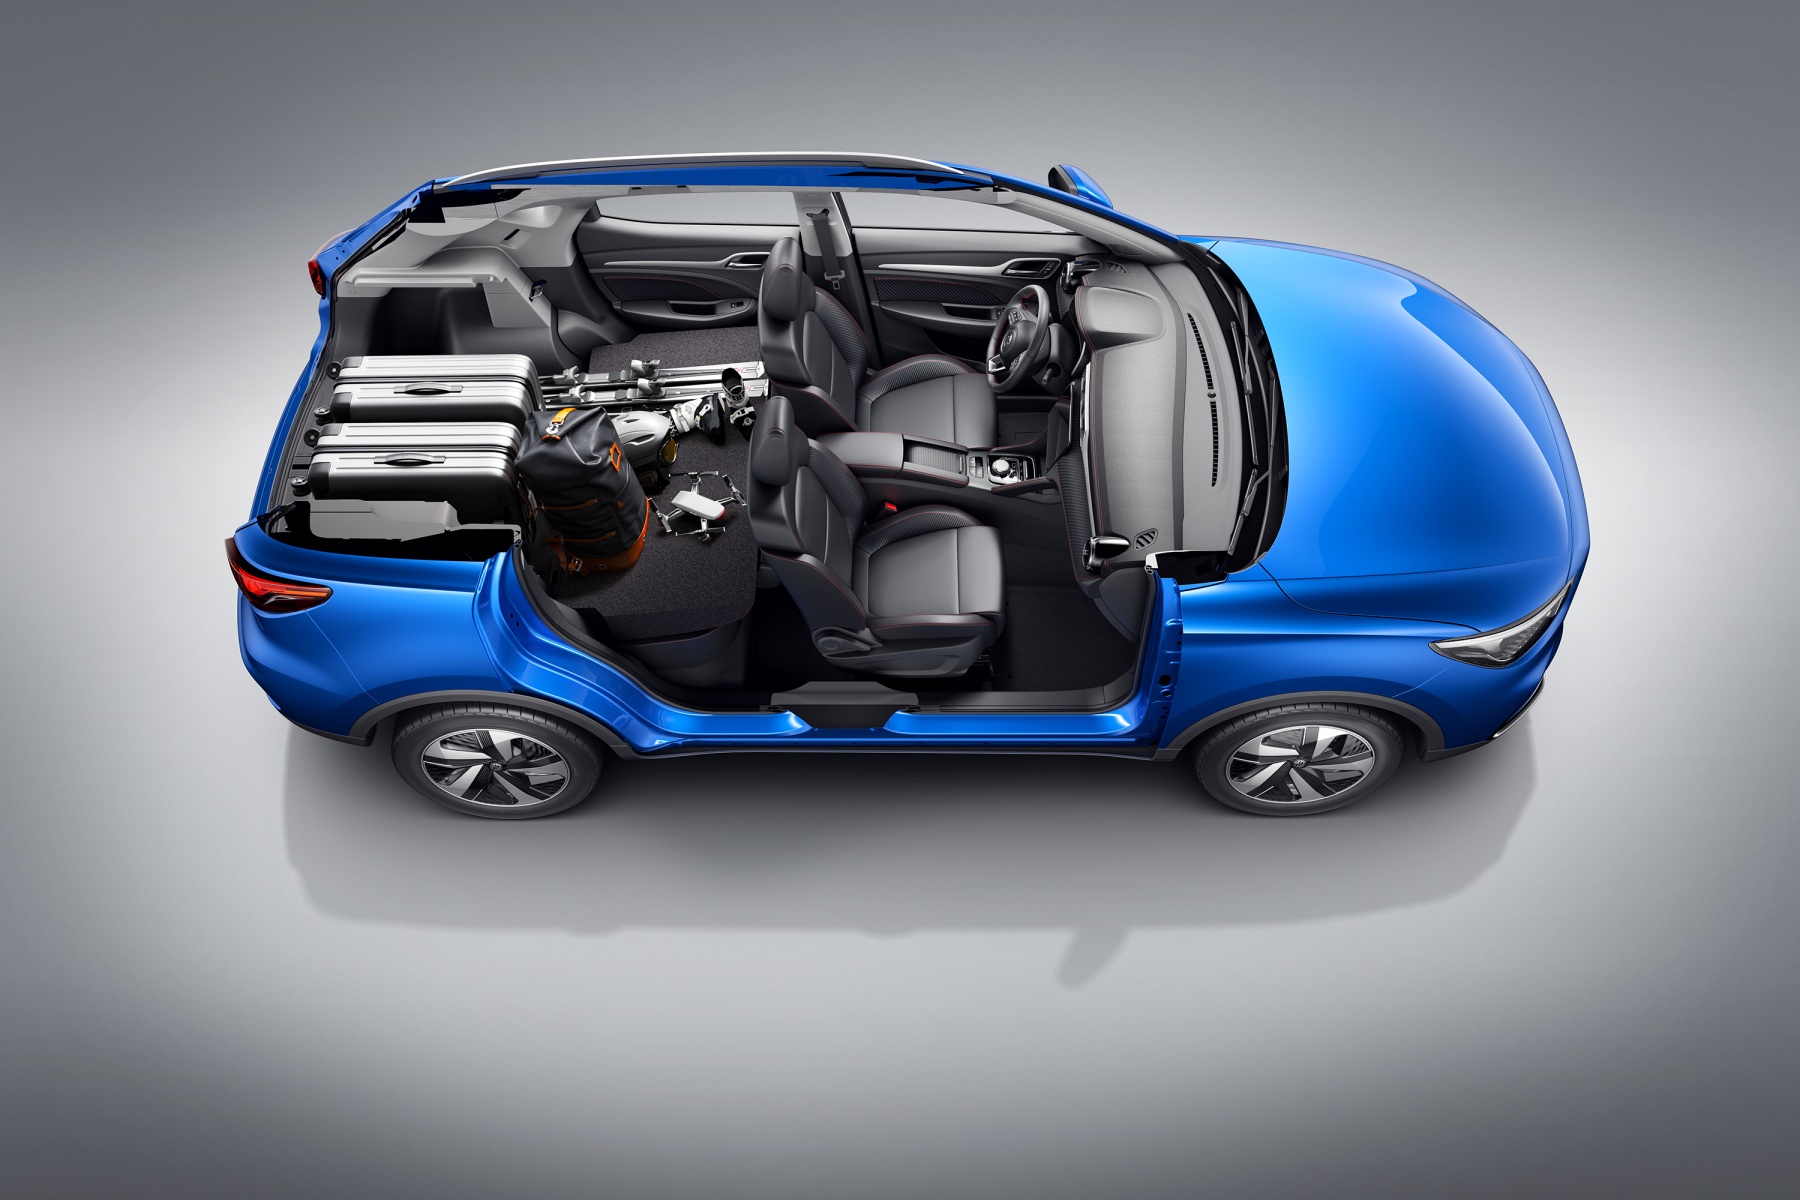 รีวิว MG ZS EV รุ่นใหม่ เปิดราคาแล้ว ! 949,000-1,023,000 บาท มอเตอร์แรงขึ้น แบทฯ ใหญ่กว่าเดิม !